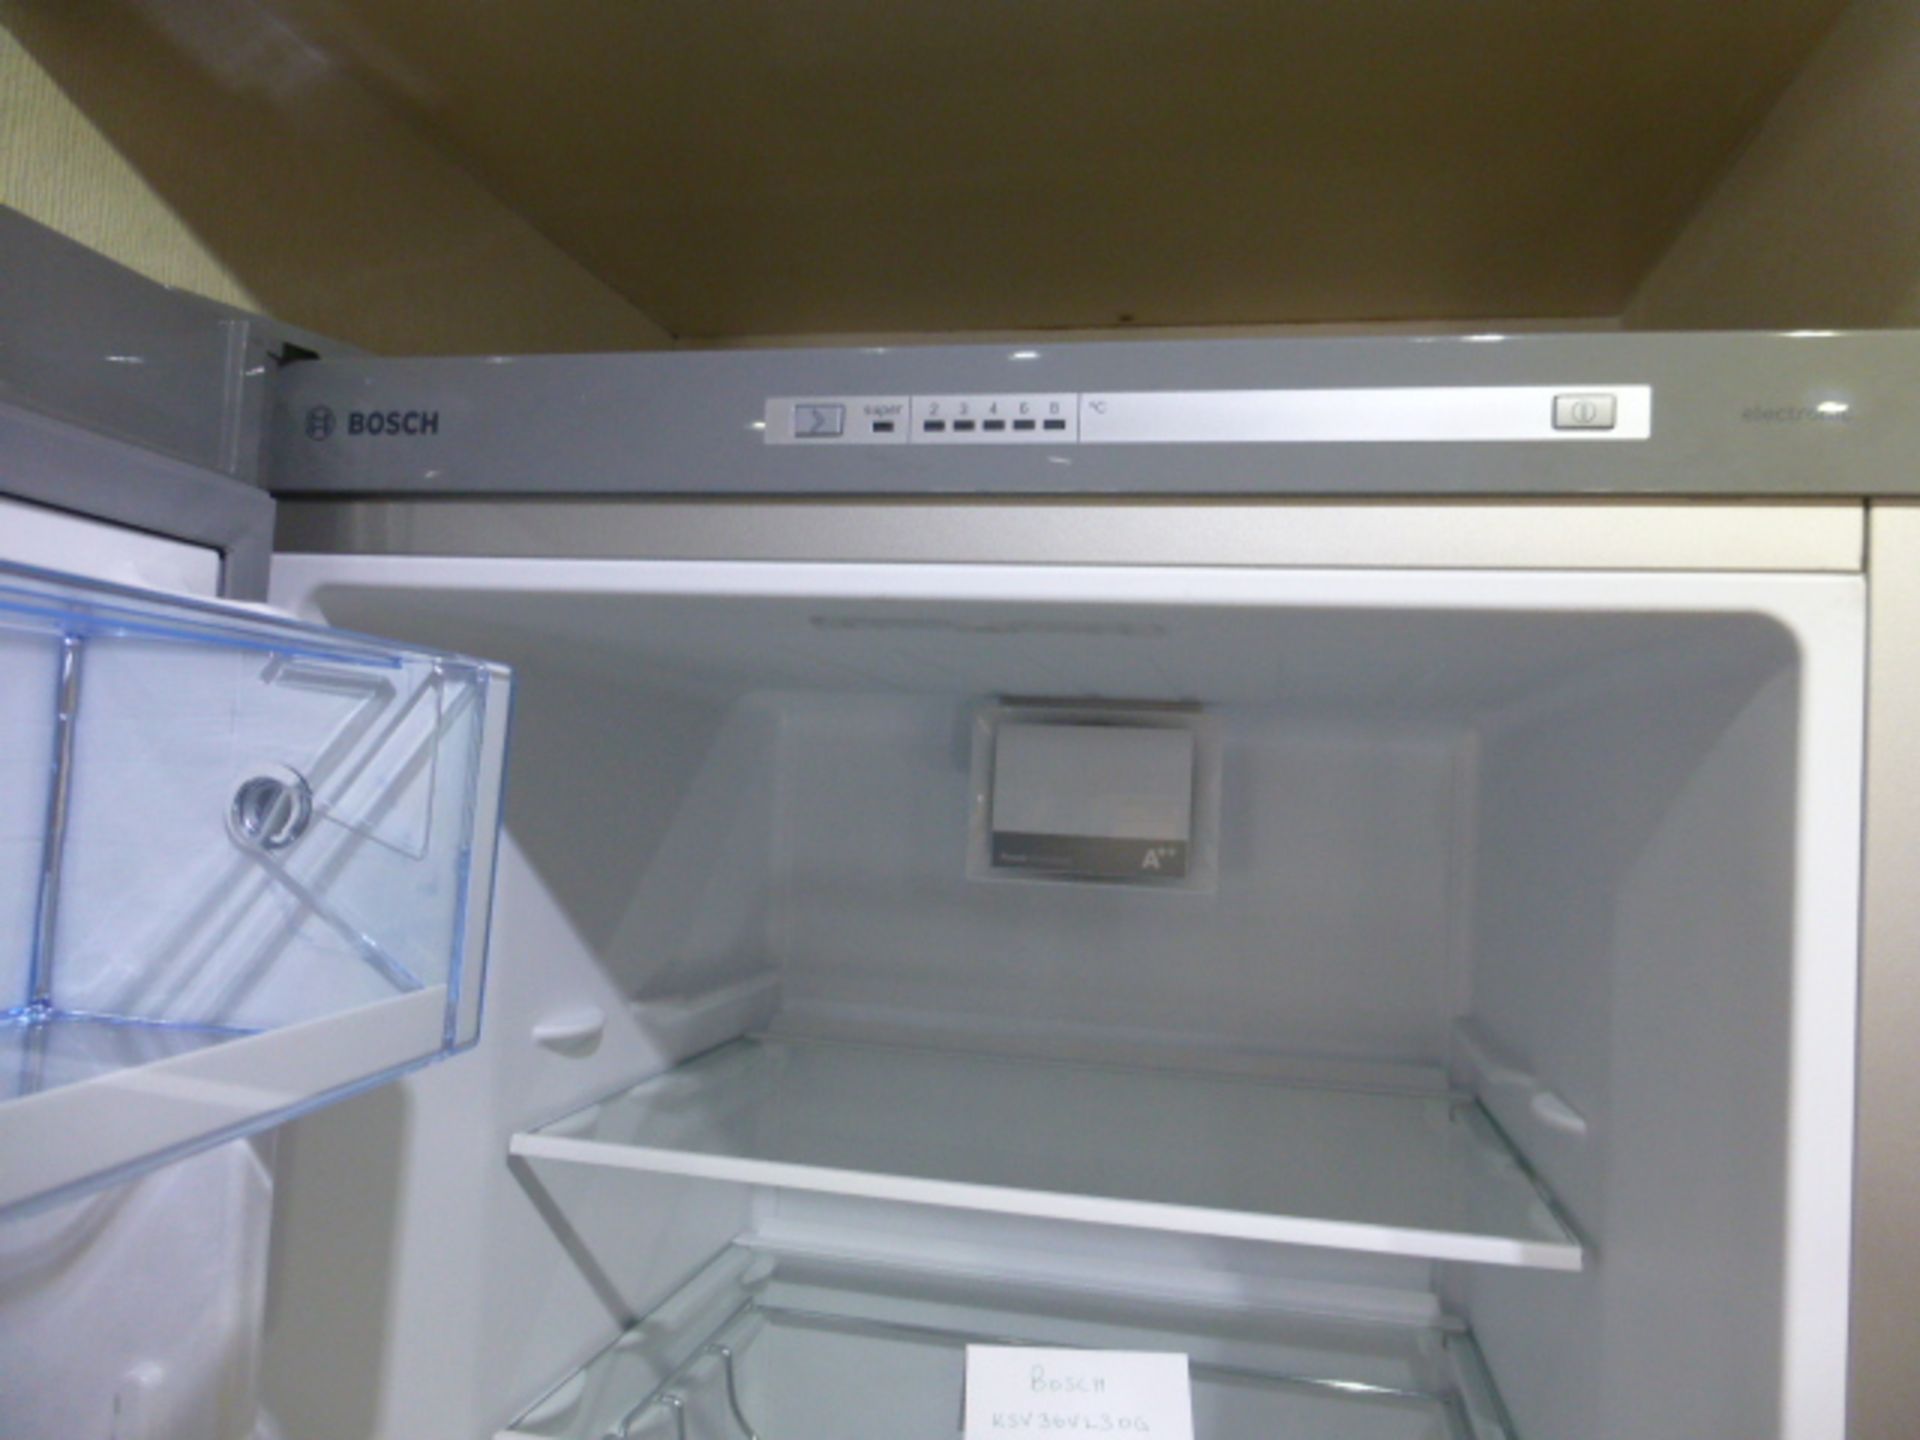 Bosch 60cm full height refrigerator model no. KSV36VL30G - Image 7 of 7